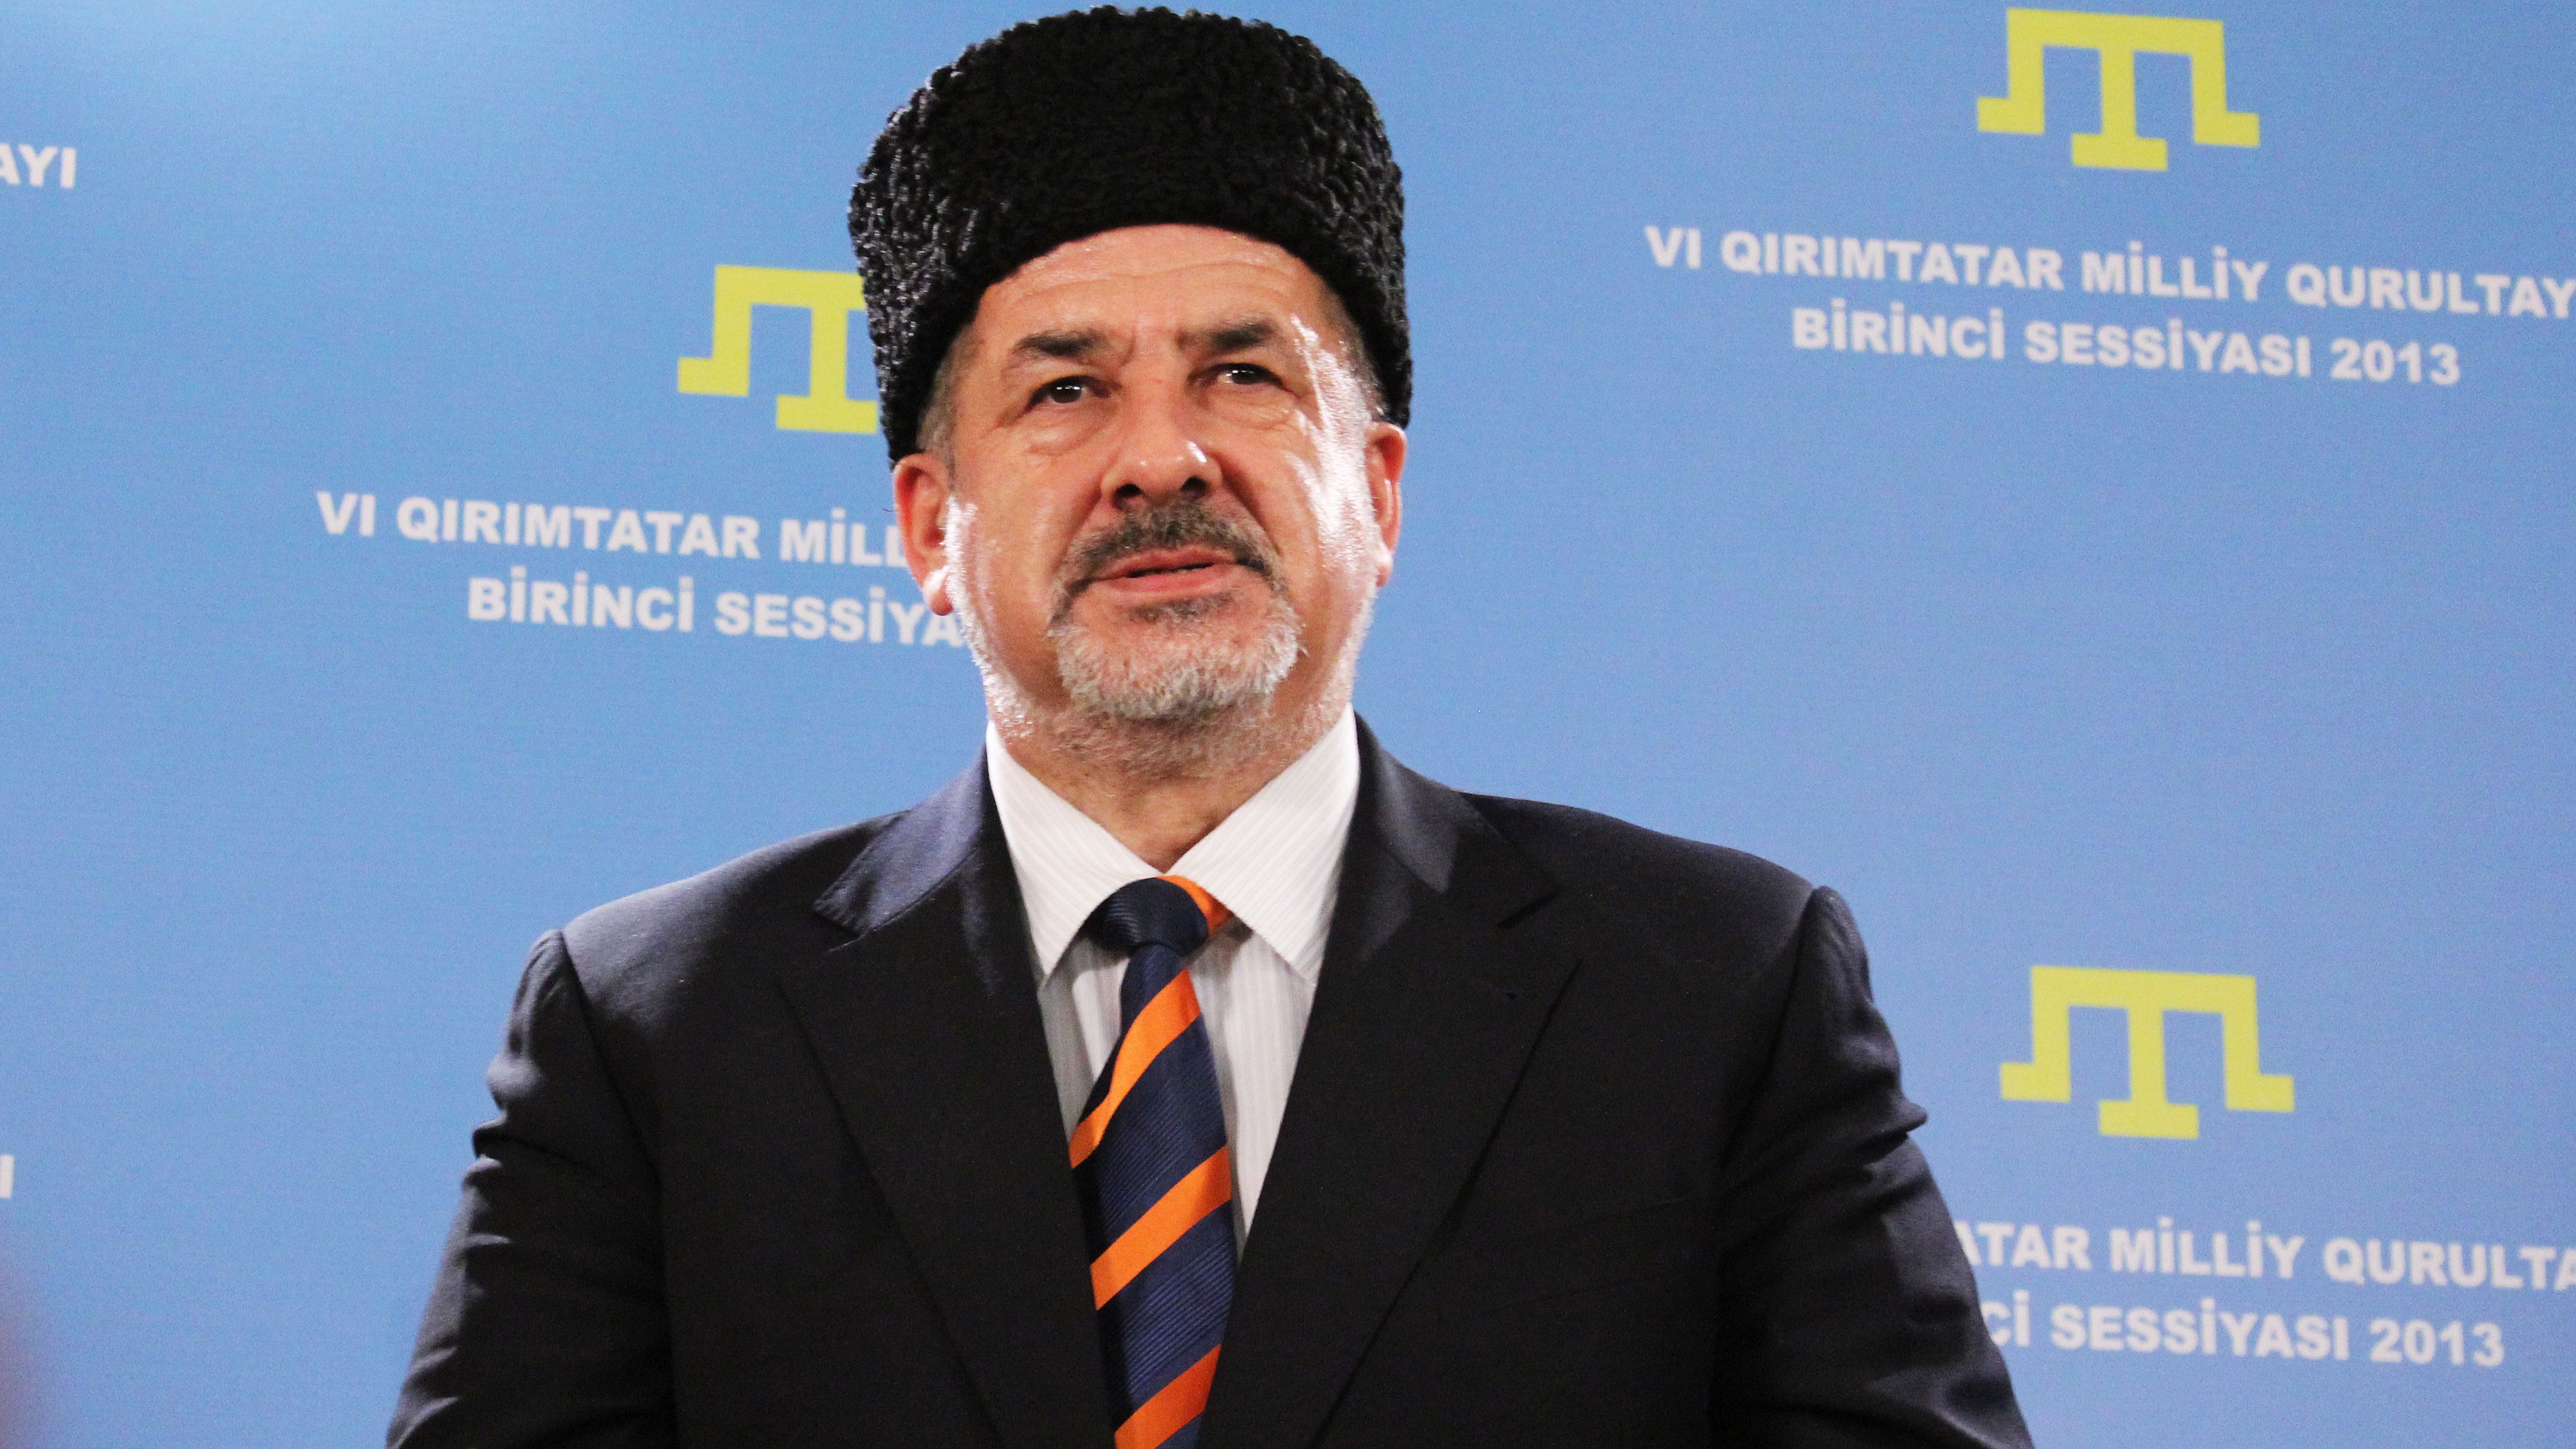 Чубаров: кримські татари на виборах будуть представлені у 4-5 партіях